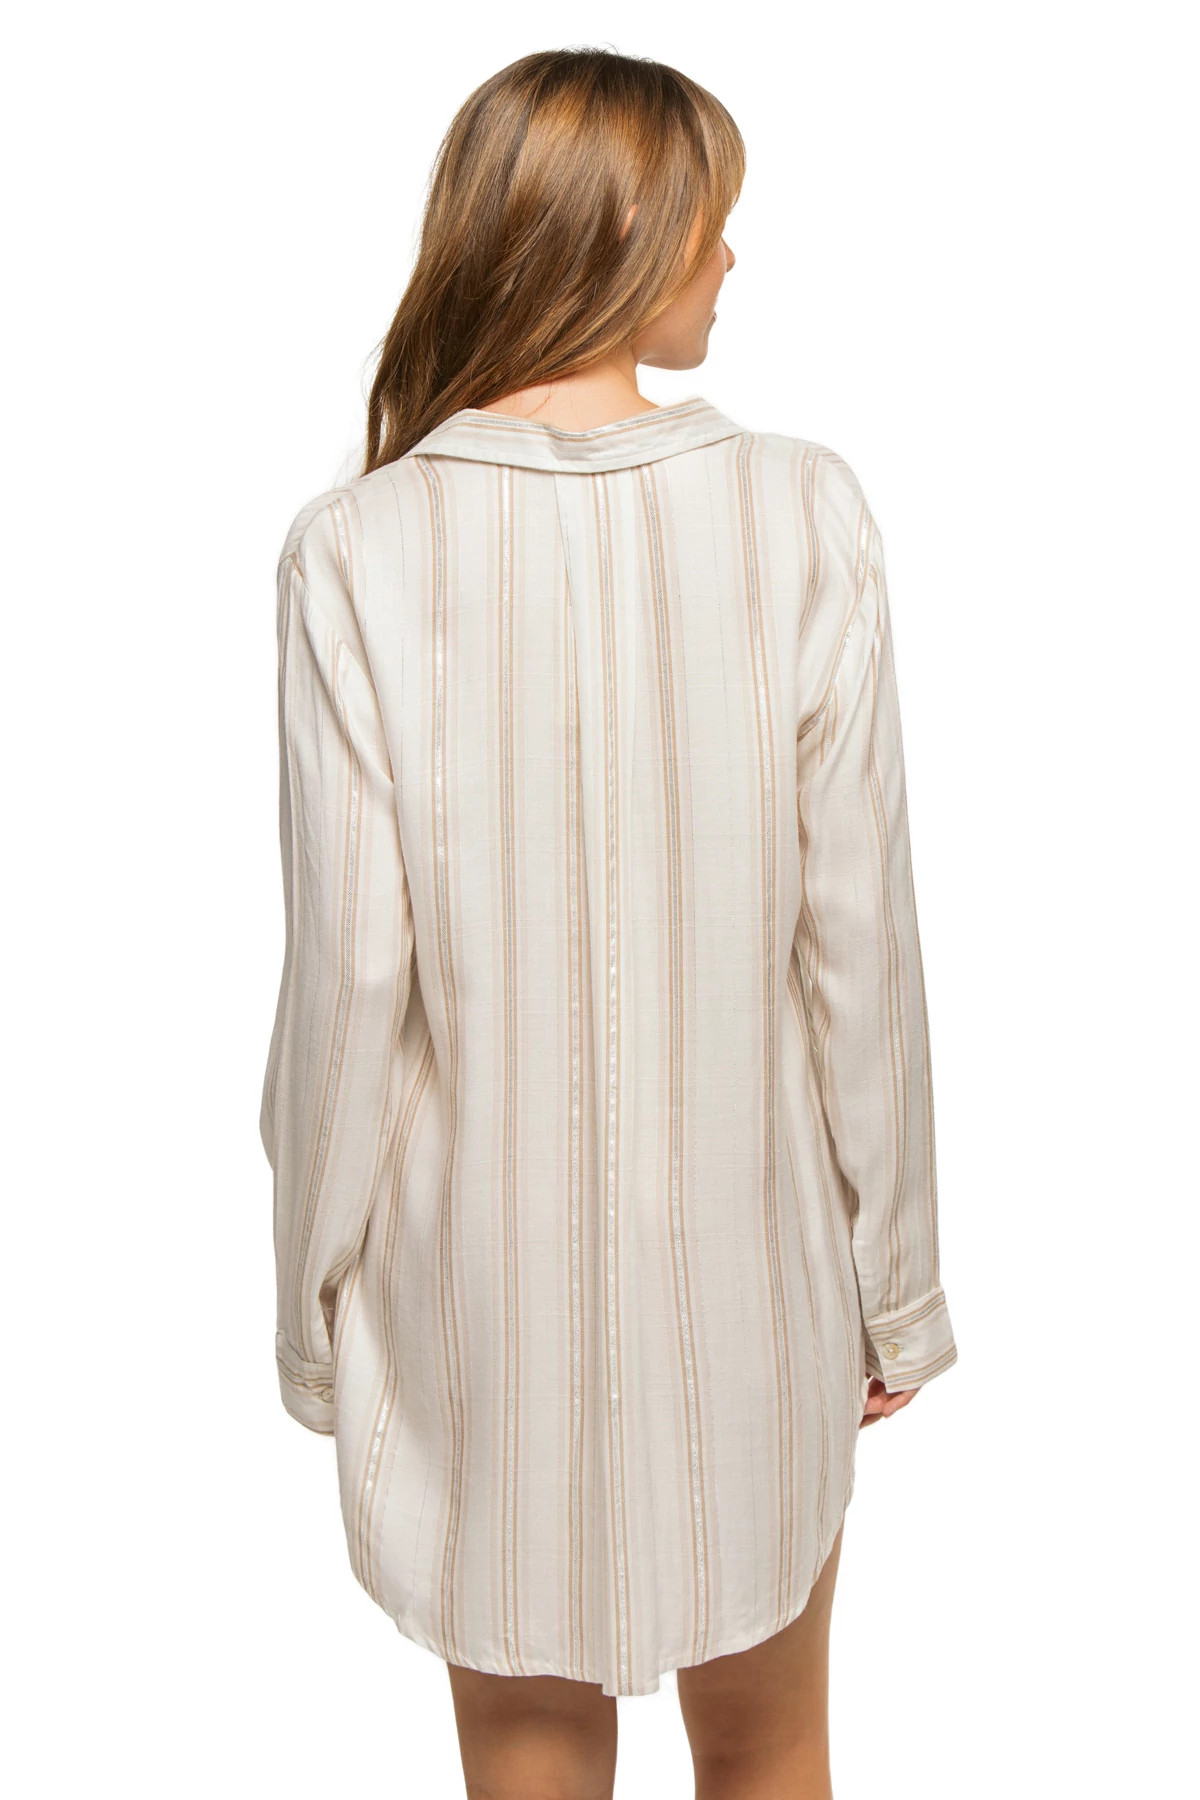 NATURAL/SILVER Metallic Stripe Shirt Dress image number 2